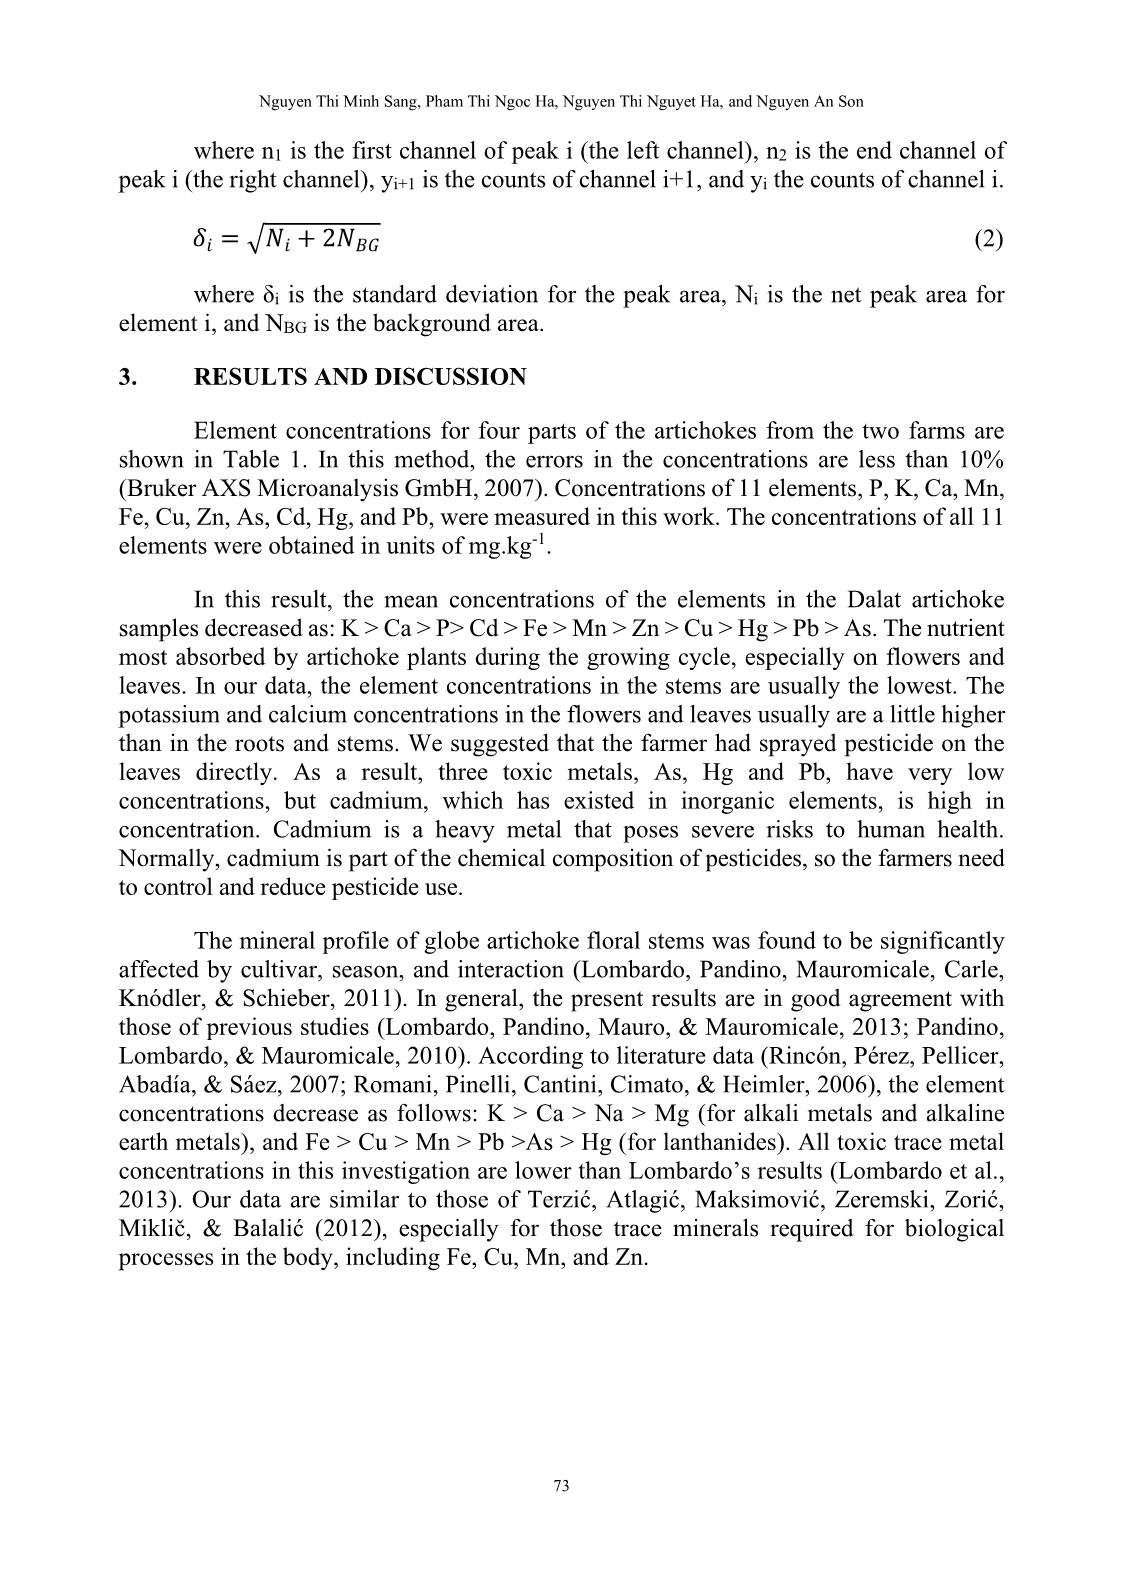 Phân tích định lượng các nguyên tố vết trong cây artichoke tại thành phố đà lạt sử dụng phương pháp huỳnh quang tia X phản xạ toàn phần trang 7